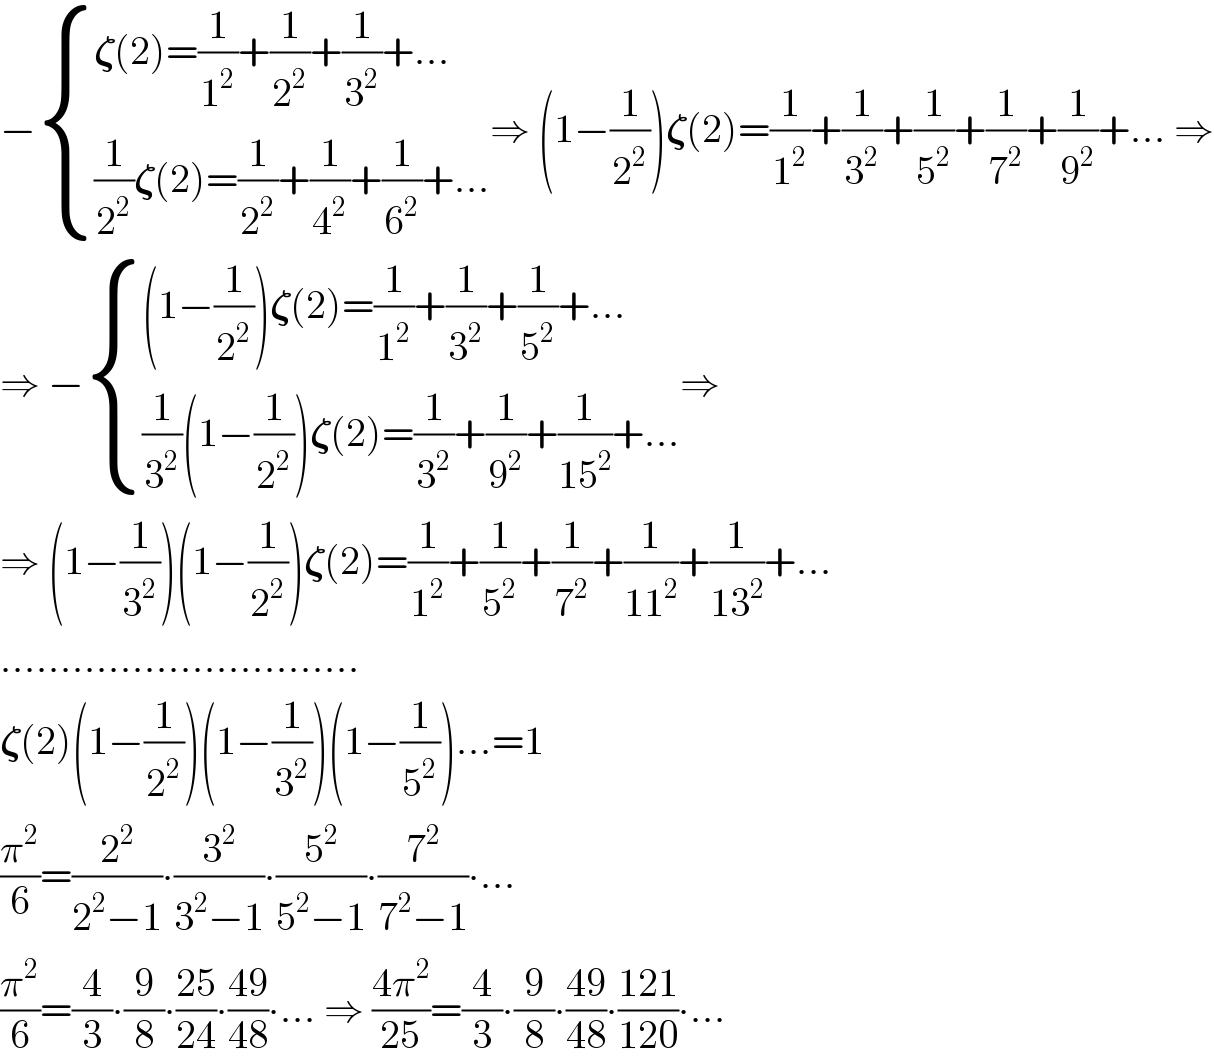 − { ((𝛇(2)=(1/1^2 )+(1/2^2 )+(1/3^2 )+...)),(((1/2^2 )𝛇(2)=(1/2^2 )+(1/4^2 )+(1/6^2 )+...)) :}⇒ (1−(1/2^2 ))𝛇(2)=(1/1^2 )+(1/3^2 )+(1/5^2 )+(1/7^2 )+(1/9^2 )+... ⇒  ⇒ − { (((1−(1/2^2 ))𝛇(2)=(1/1^2 )+(1/3^2 )+(1/5^2 )+...)),(((1/3^2 )(1−(1/2^2 ))𝛇(2)=(1/3^2 )+(1/9^2 )+(1/(15^2 ))+...)) :}⇒  ⇒ (1−(1/3^2 ))(1−(1/2^2 ))𝛇(2)=(1/1^2 )+(1/5^2 )+(1/7^2 )+(1/(11^2 ))+(1/(13^2 ))+...  ..............................  𝛇(2)(1−(1/2^2 ))(1−(1/3^2 ))(1−(1/5^2 ))...=1  (π^2 /6)=(2^2 /(2^2 −1))∙(3^2 /(3^2 −1))∙(5^2 /(5^2 −1))∙(7^2 /(7^2 −1))∙...  (π^2 /6)=(4/3)∙(9/8)∙((25)/(24))∙((49)/(48))∙... ⇒ ((4π^2 )/(25))=(4/3)∙(9/8)∙((49)/(48))∙((121)/(120))∙...  